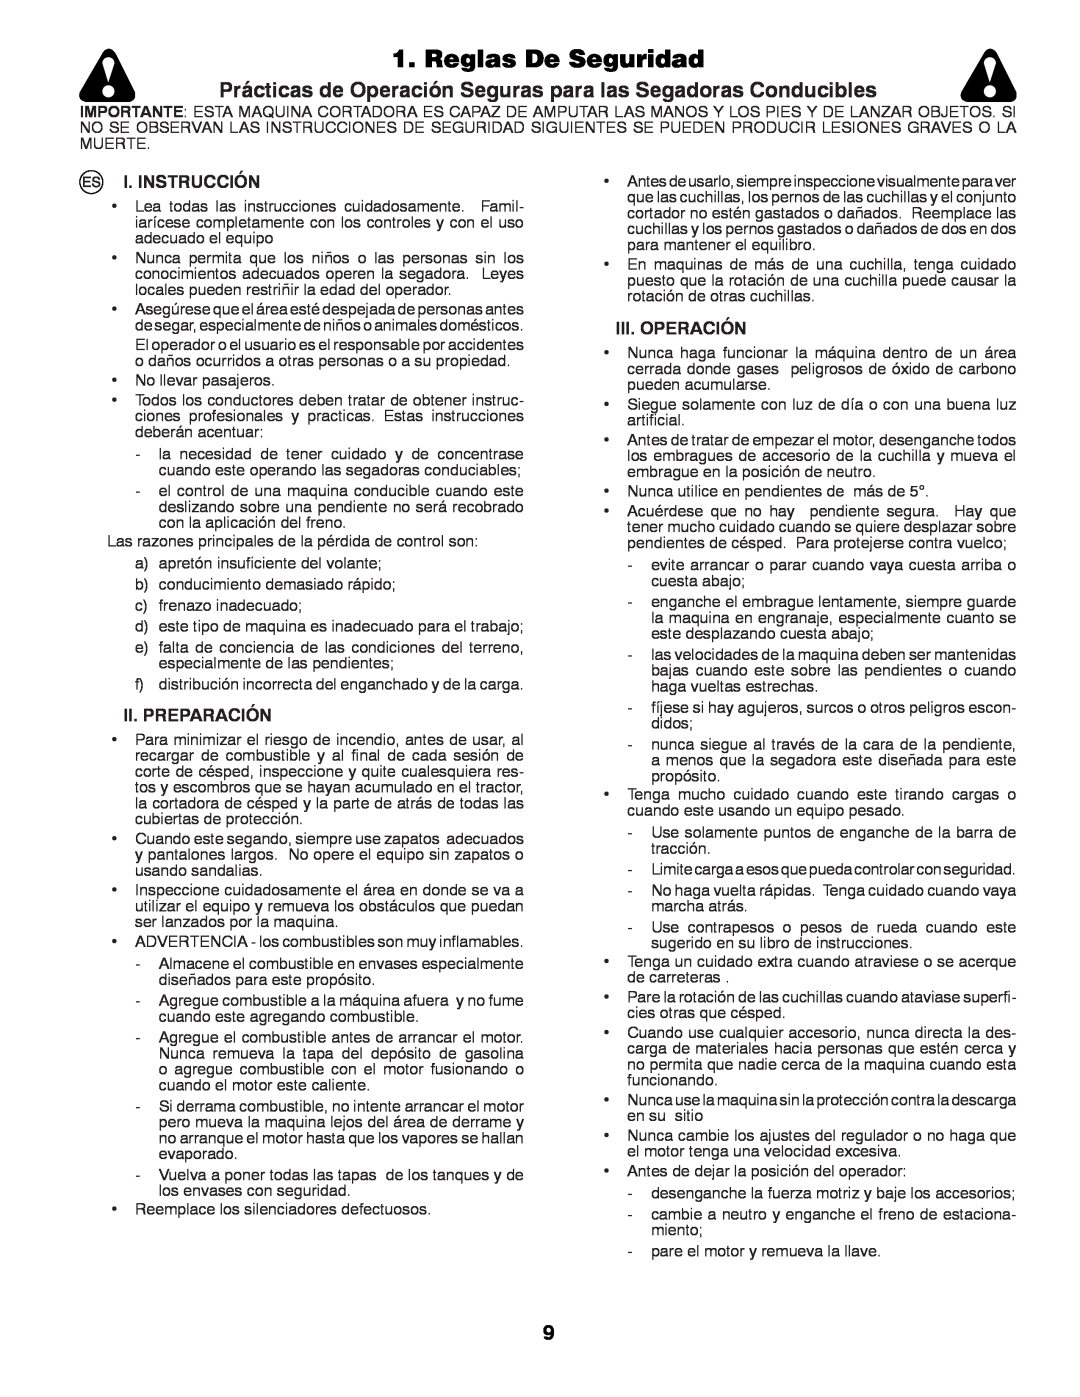 Husqvarna LT131 Reglas De Seguridad, Prácticas de Operación Seguras para las Segadoras Conducibles, I. Instrucción 